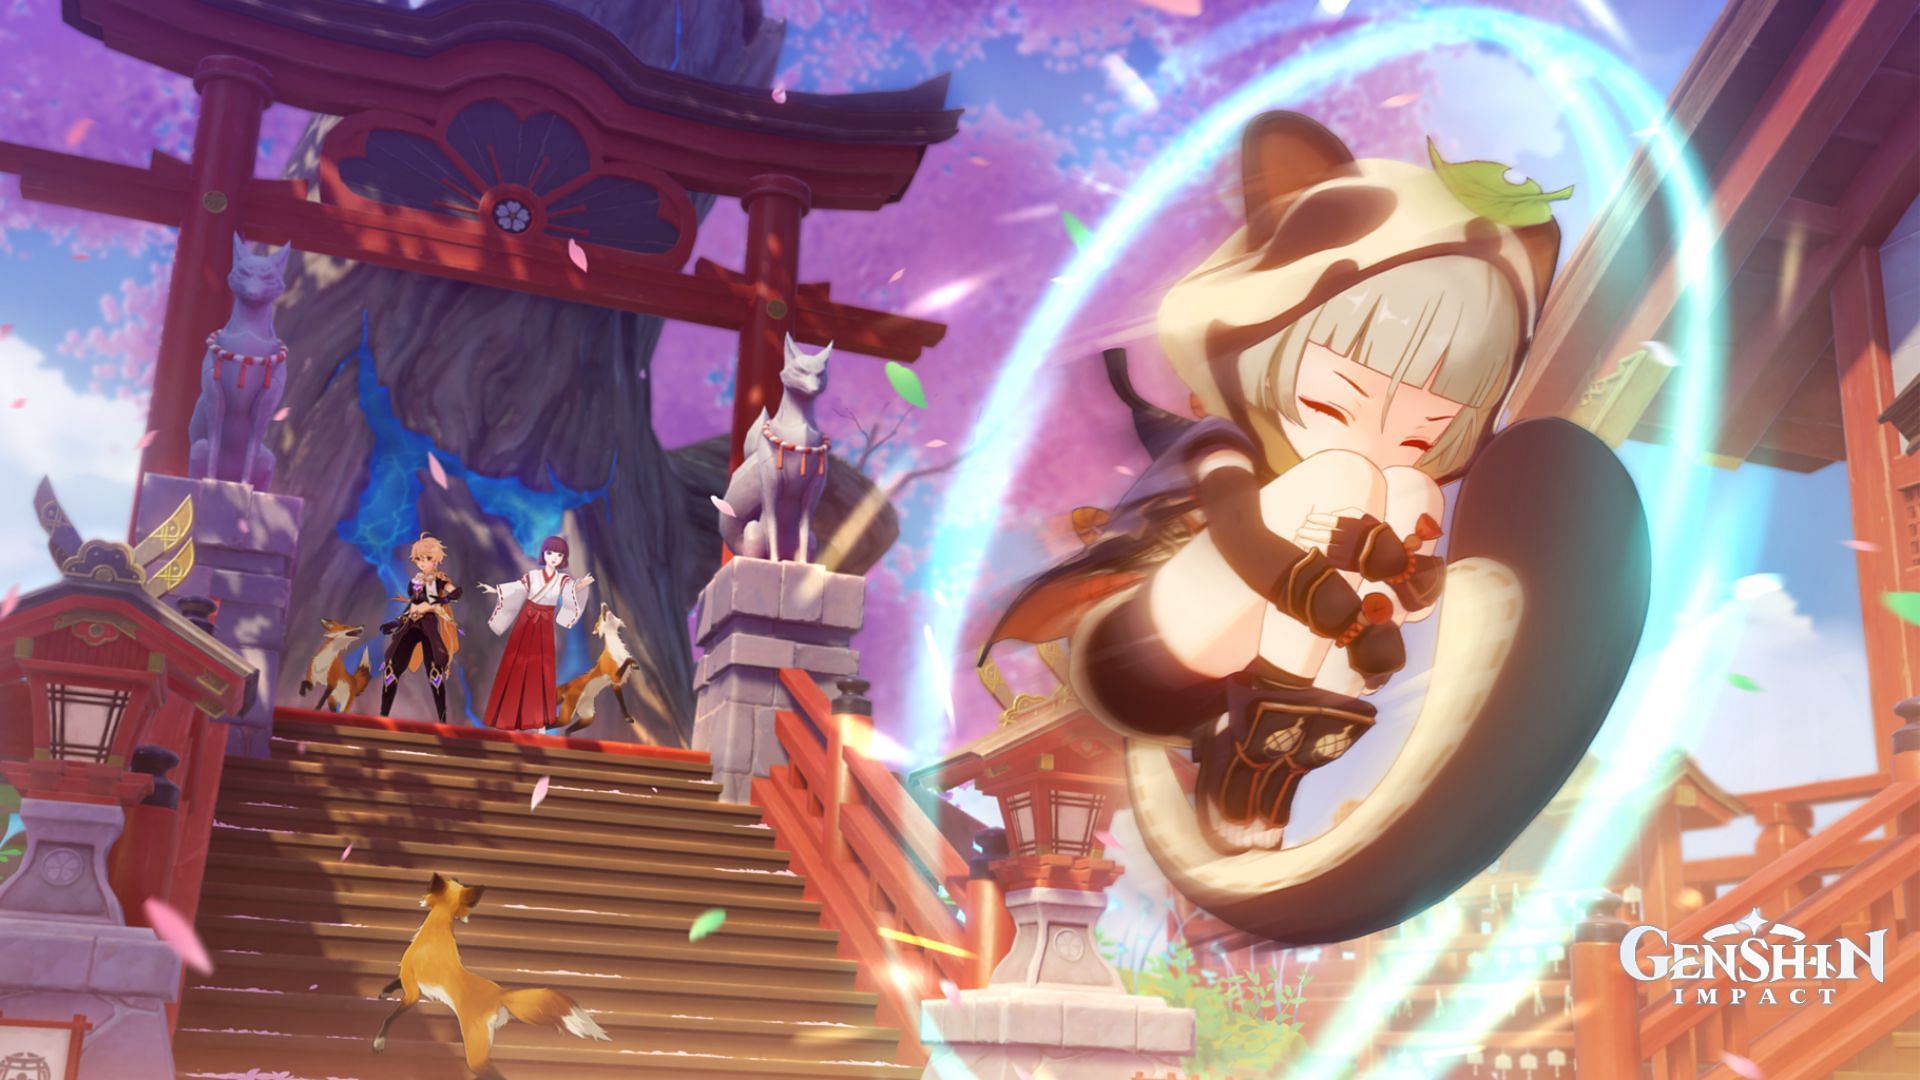 Sayu running away from the Shrine Maiden (Image via Genshin Impact)